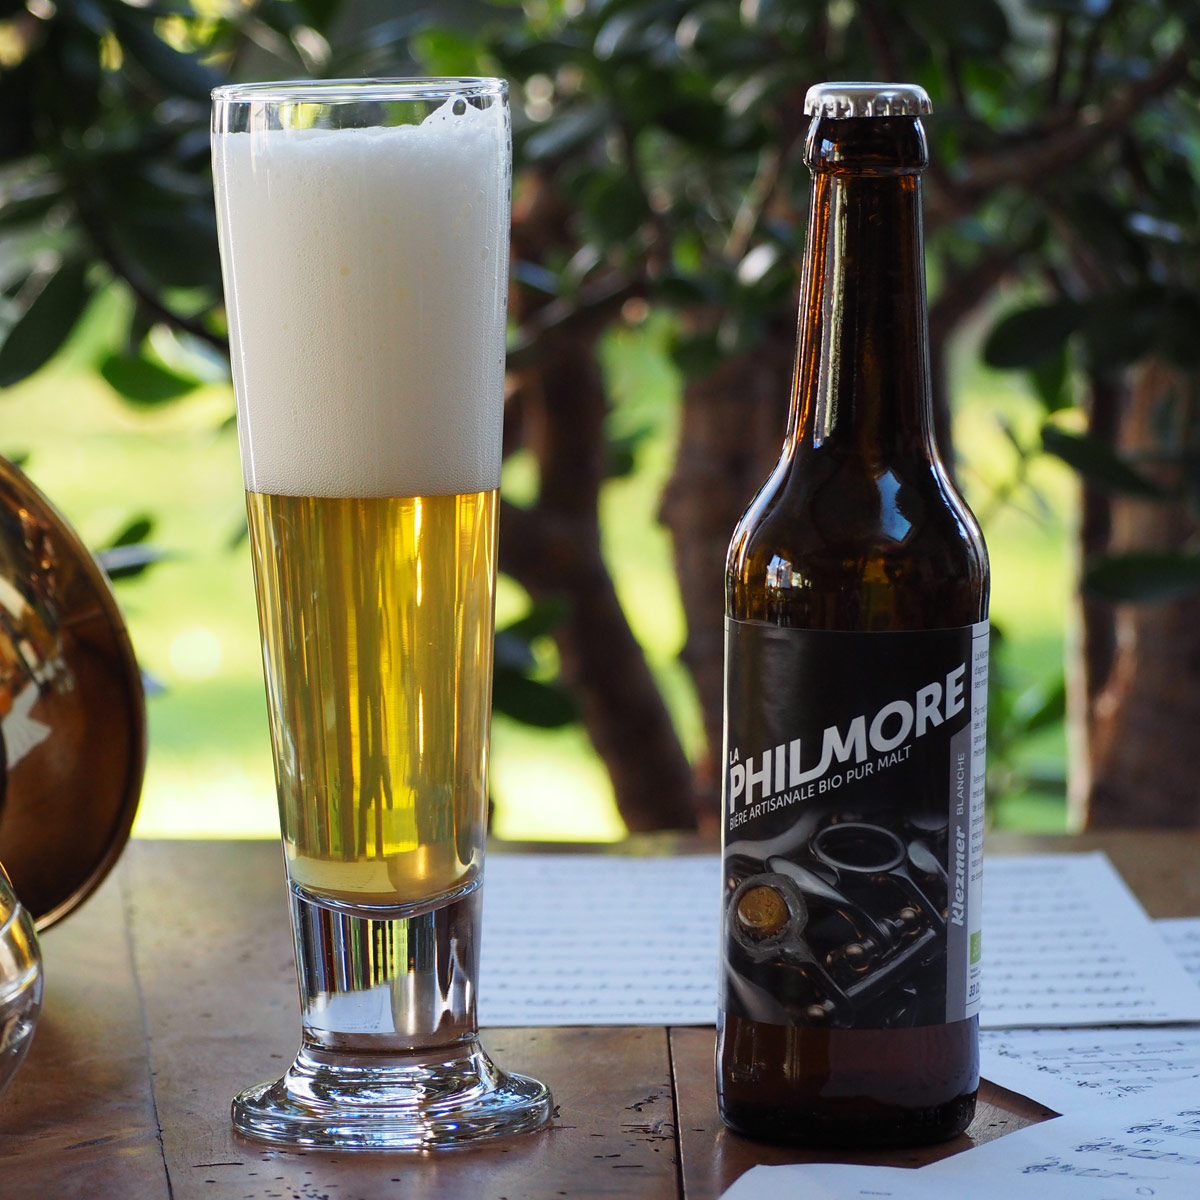 La Philmore Klezmer – Bière artisanale bio et pur malt